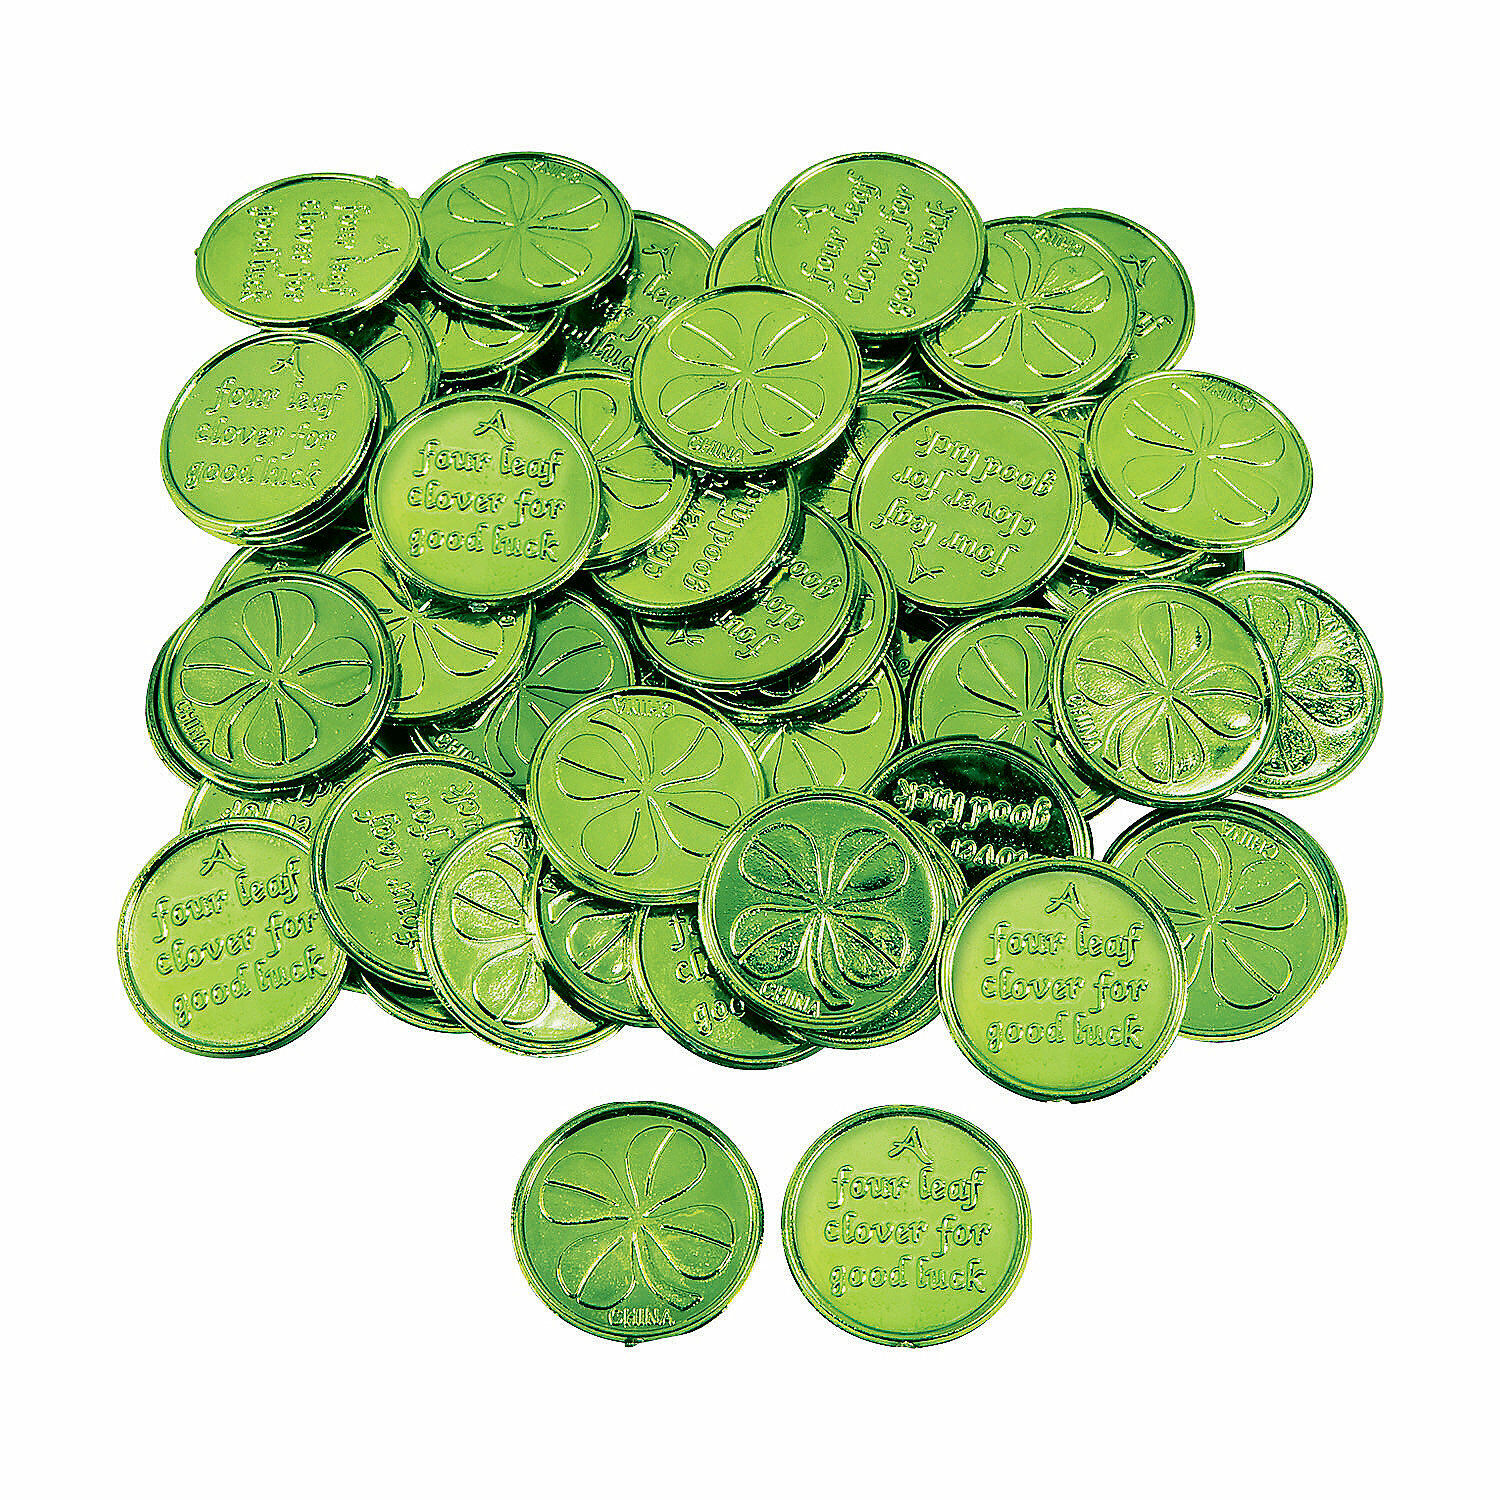 Four-Leaf Clover Good Luck Coins, Toys, 144 Pieces